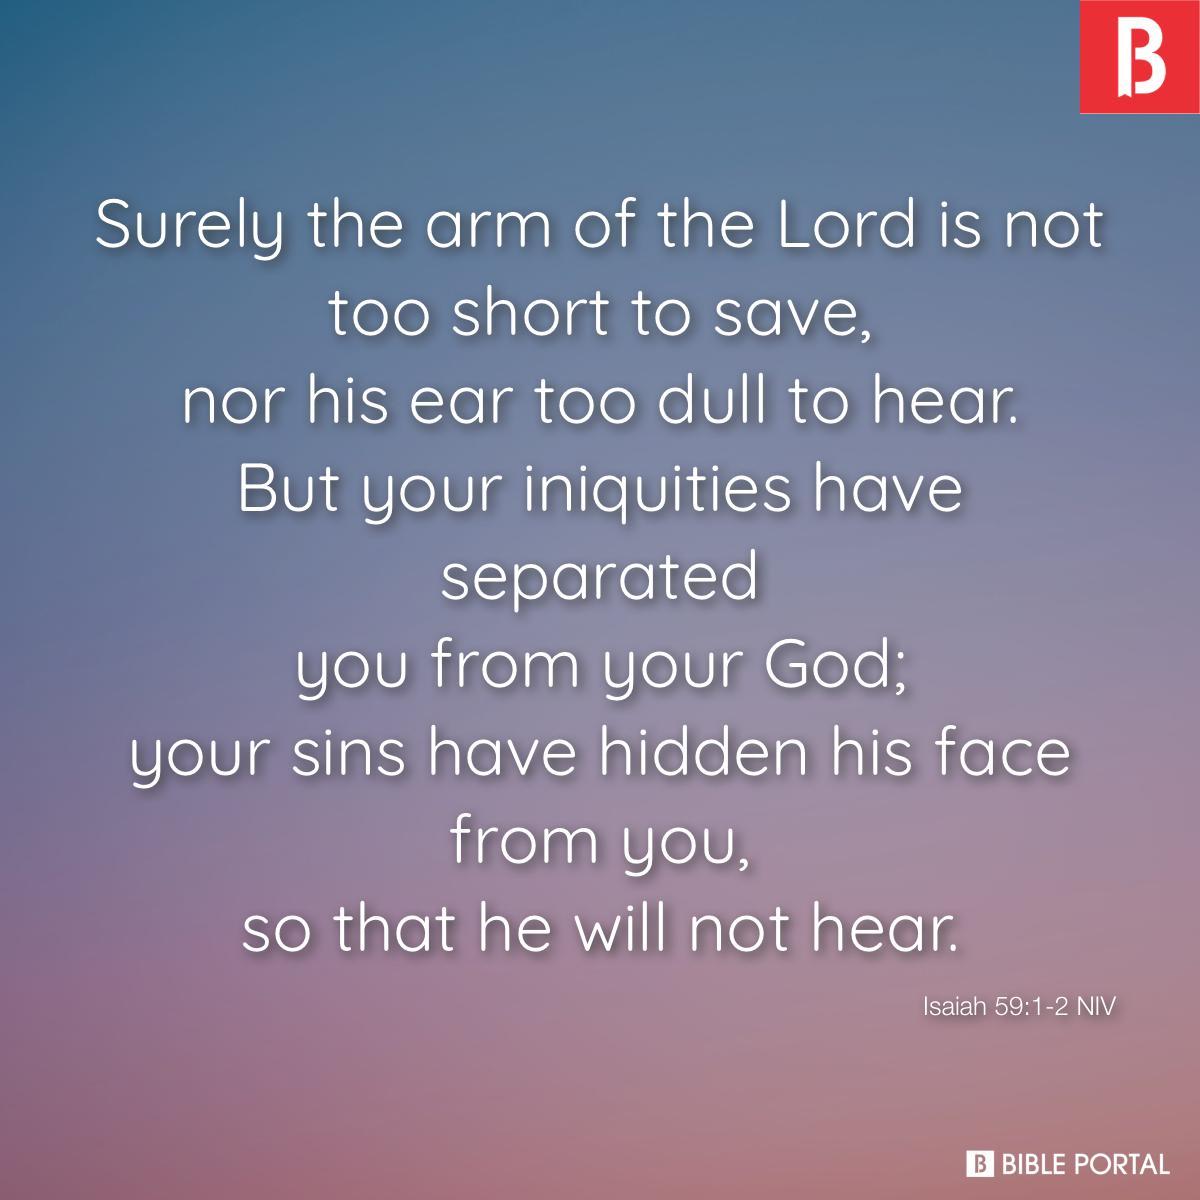 Isaiah 59:1-2 NIV